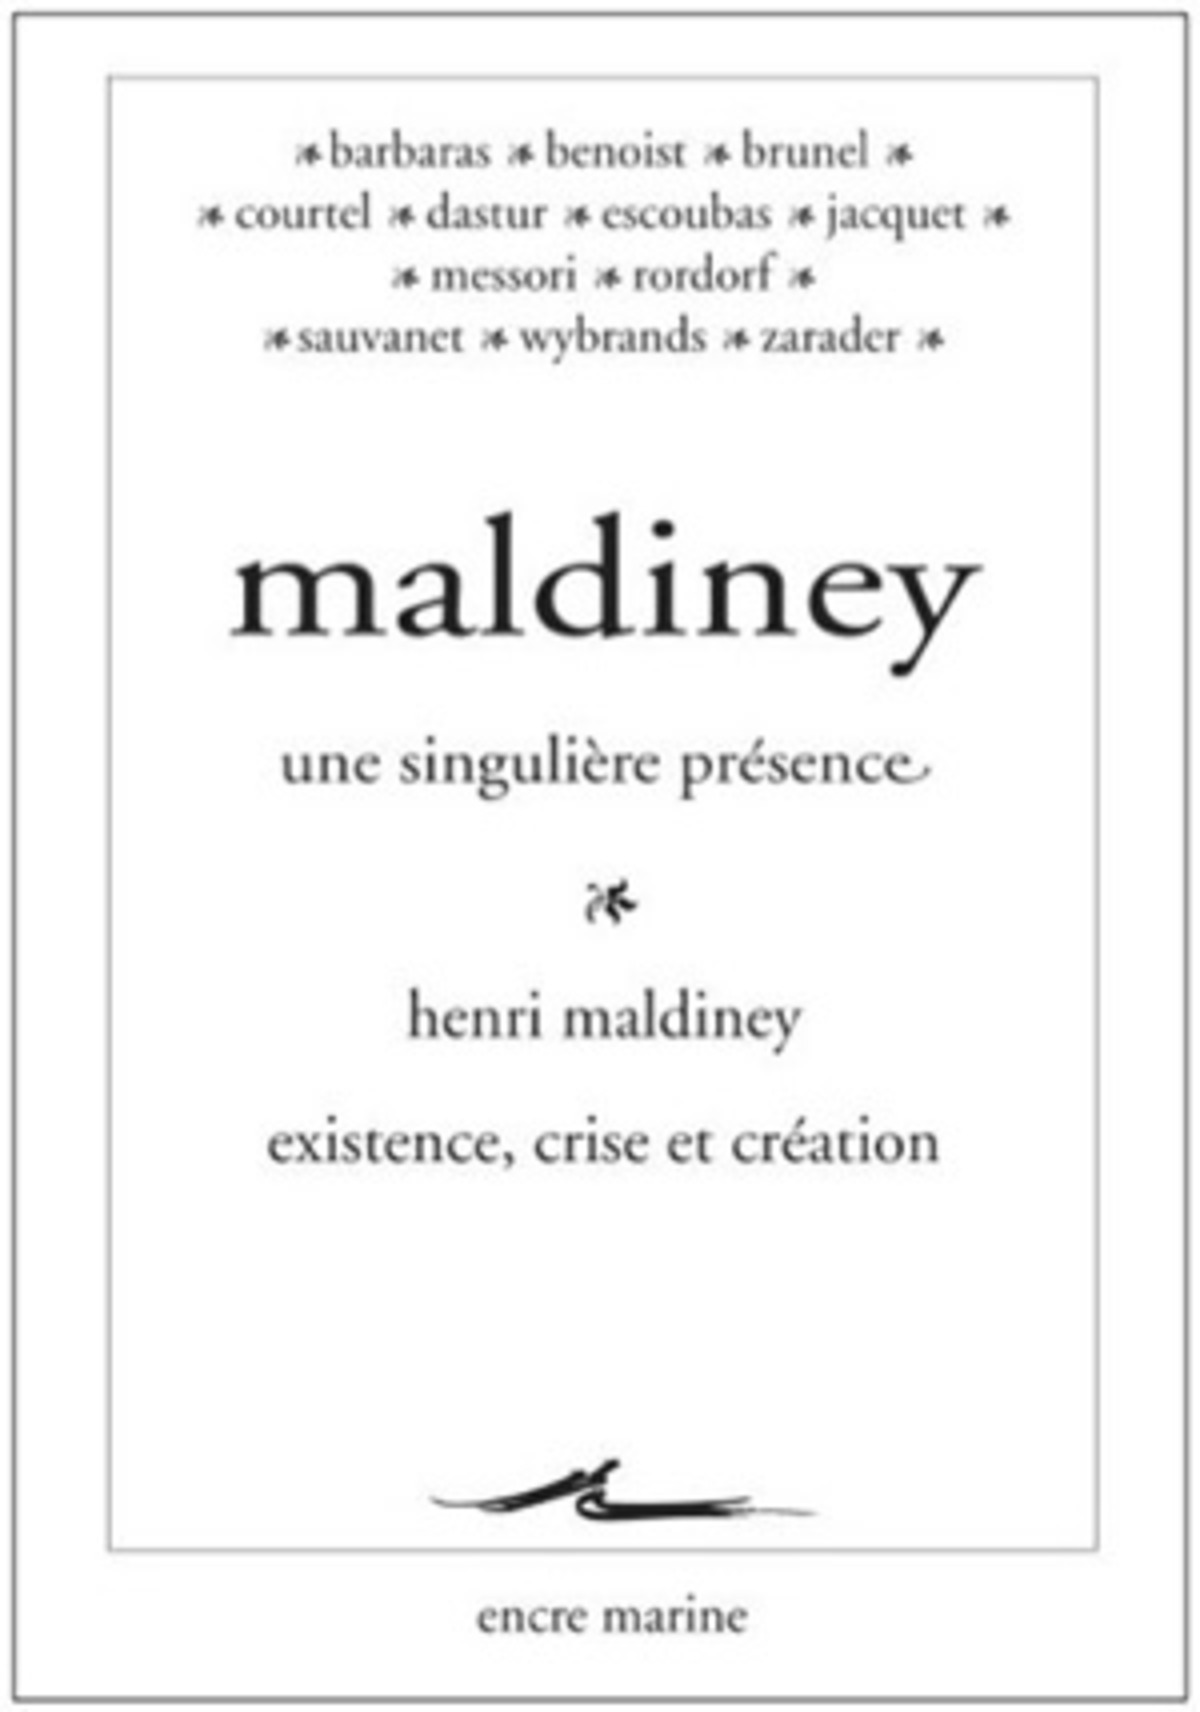 Maldiney, une singulière présence